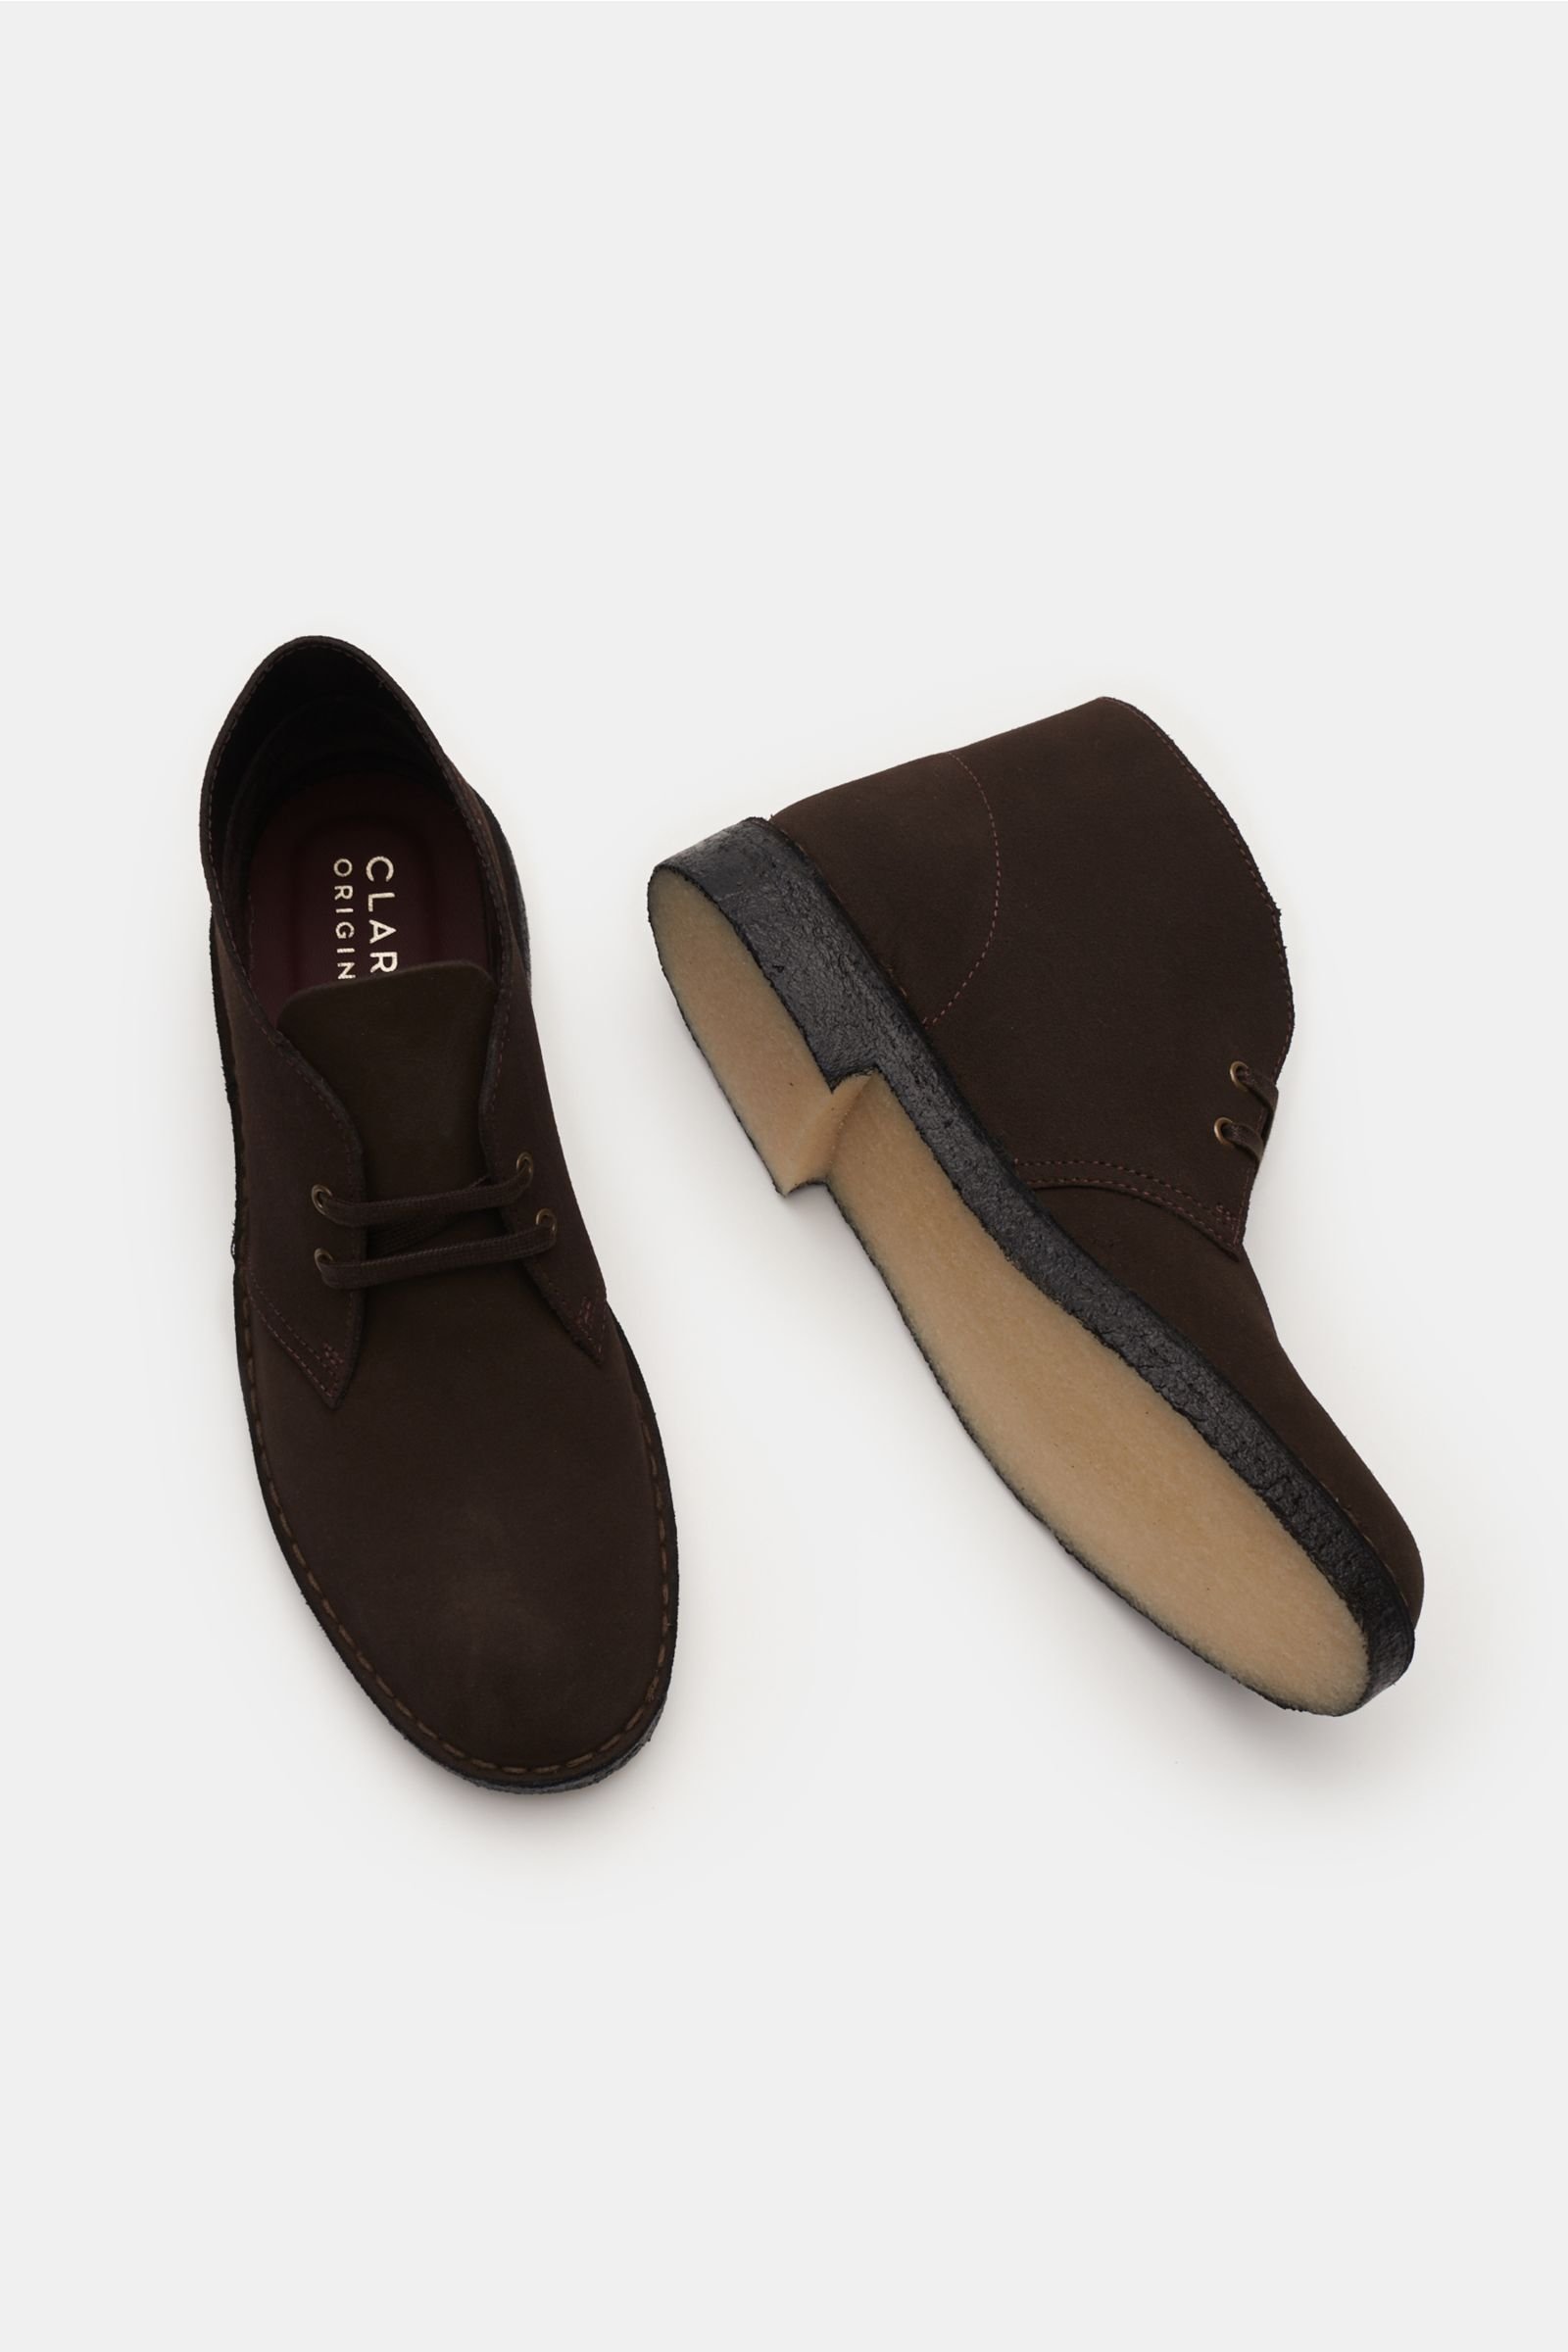 dark brown leather clarks desert boots